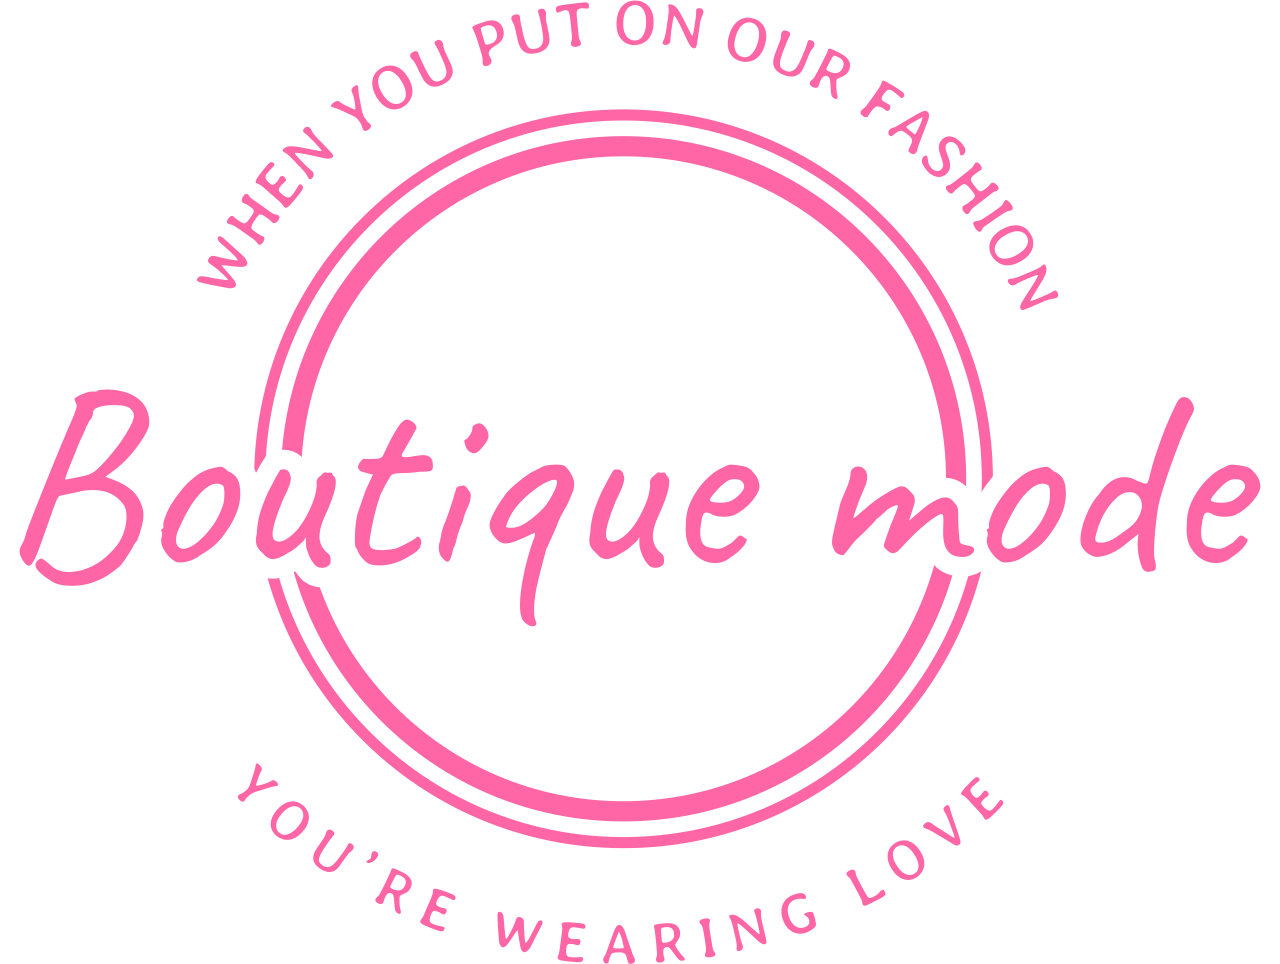 Boutique mode's web page